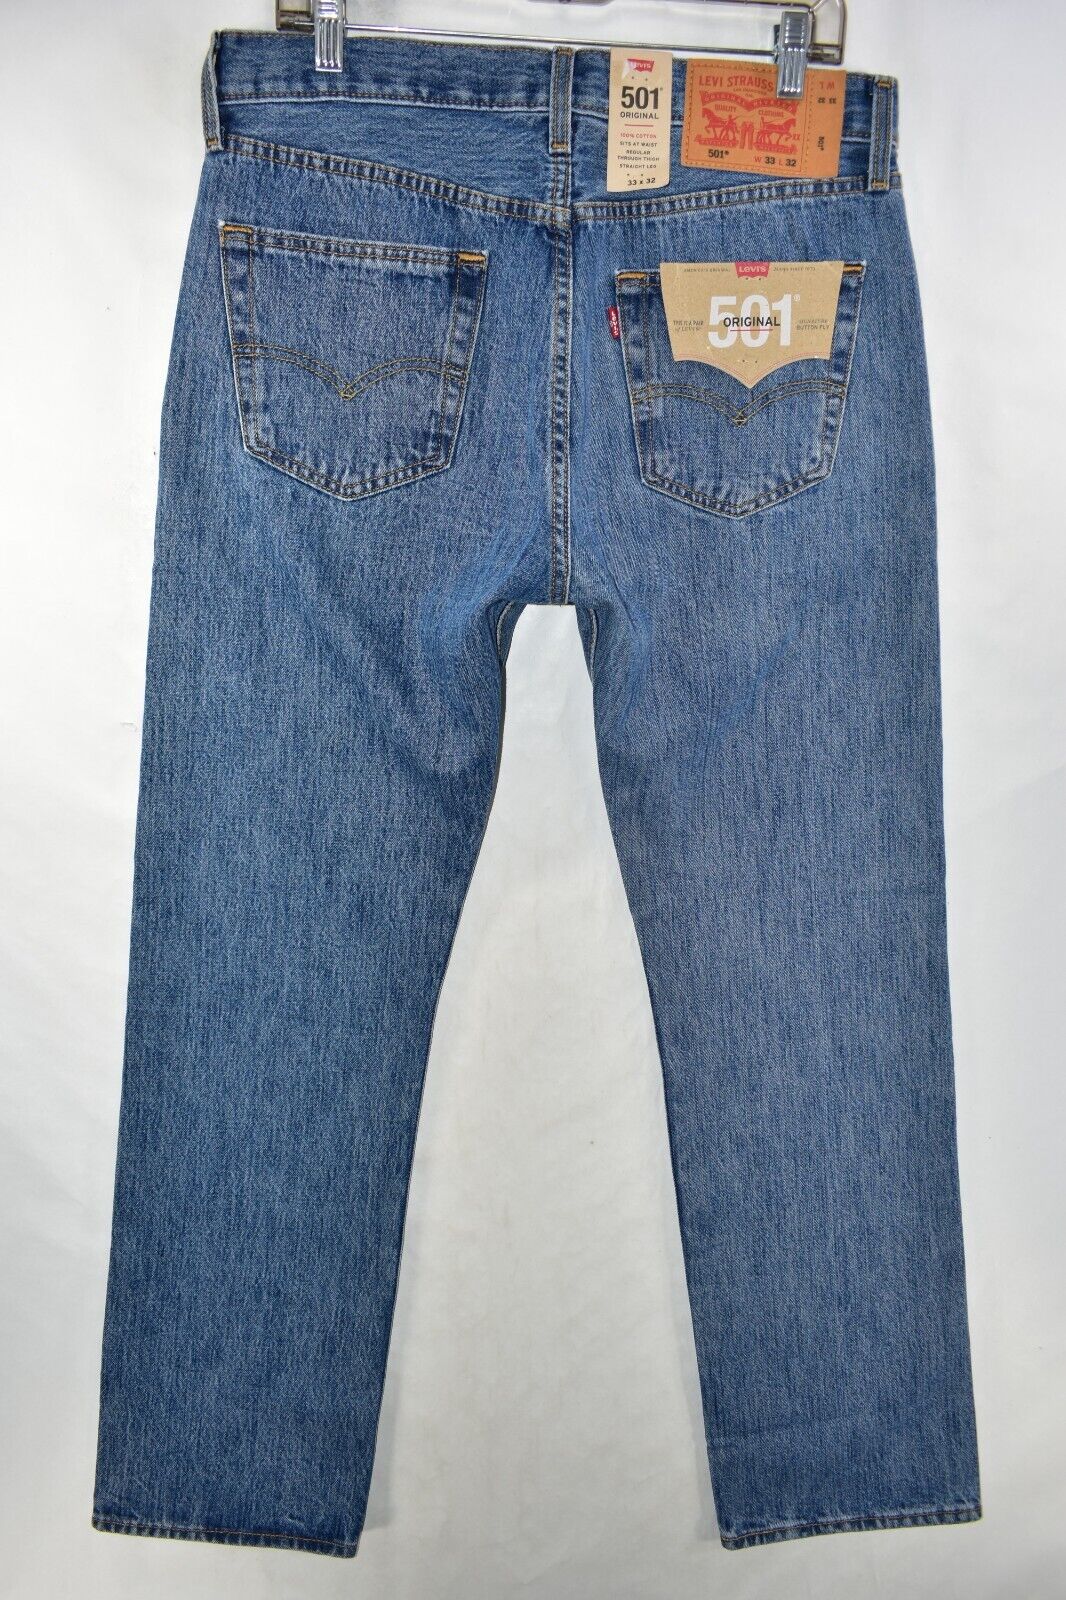 Levis+501+Jeans+Mens+Size+33+X+32+Stonewash+Original+Button+Fly+